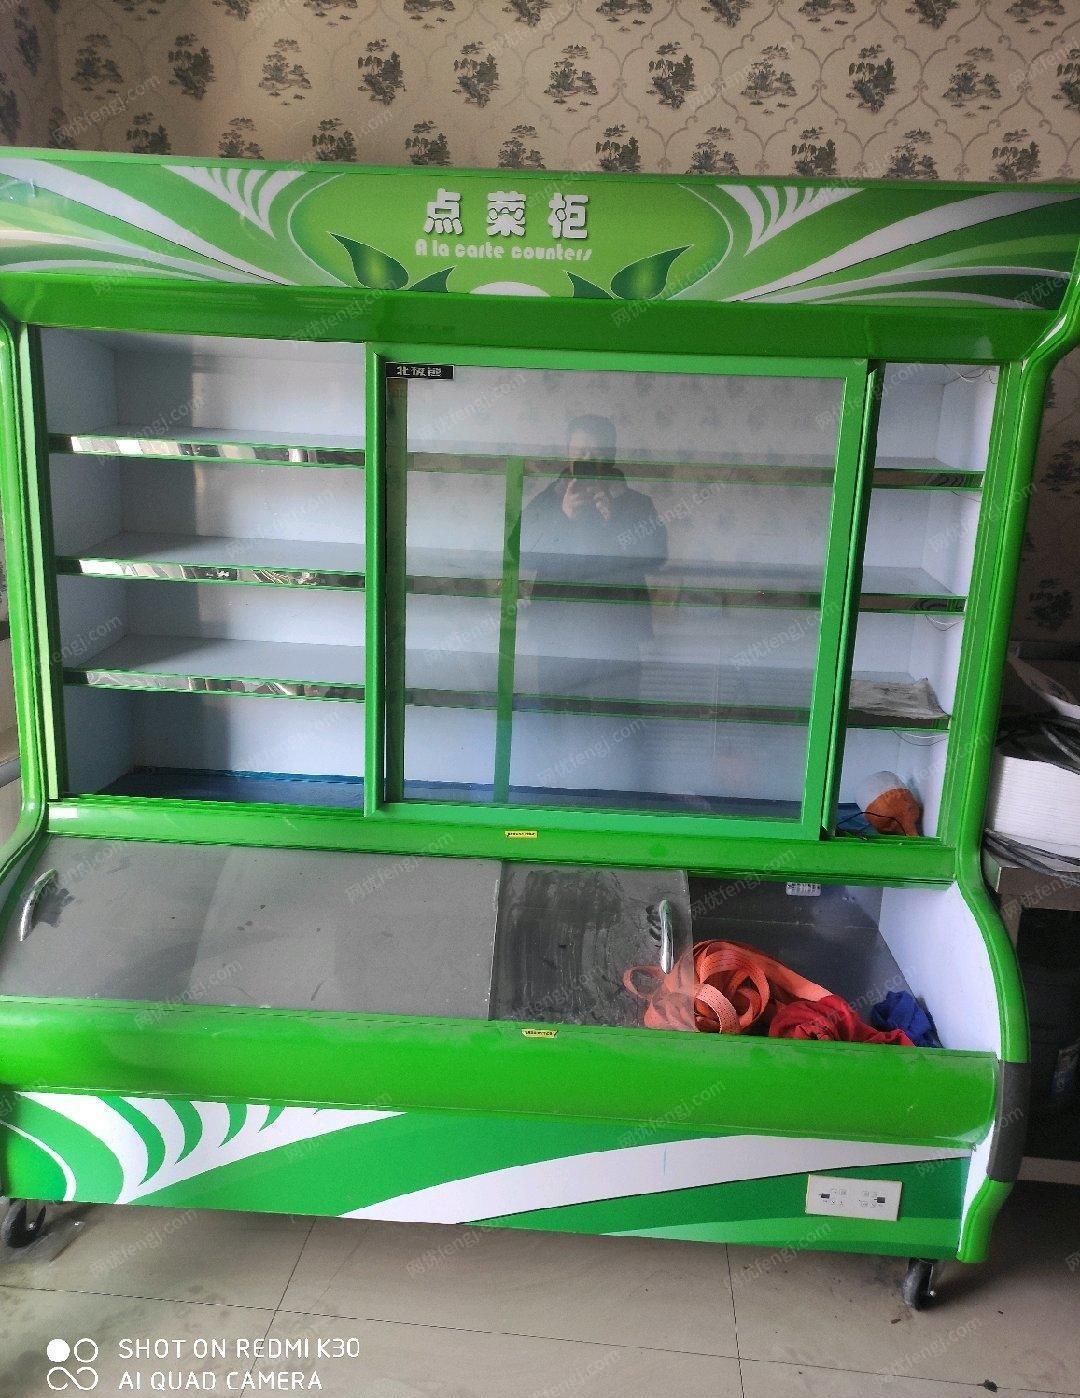 新疆乌鲁木齐99成新点菜机出售。上面冷藏下面冷冻